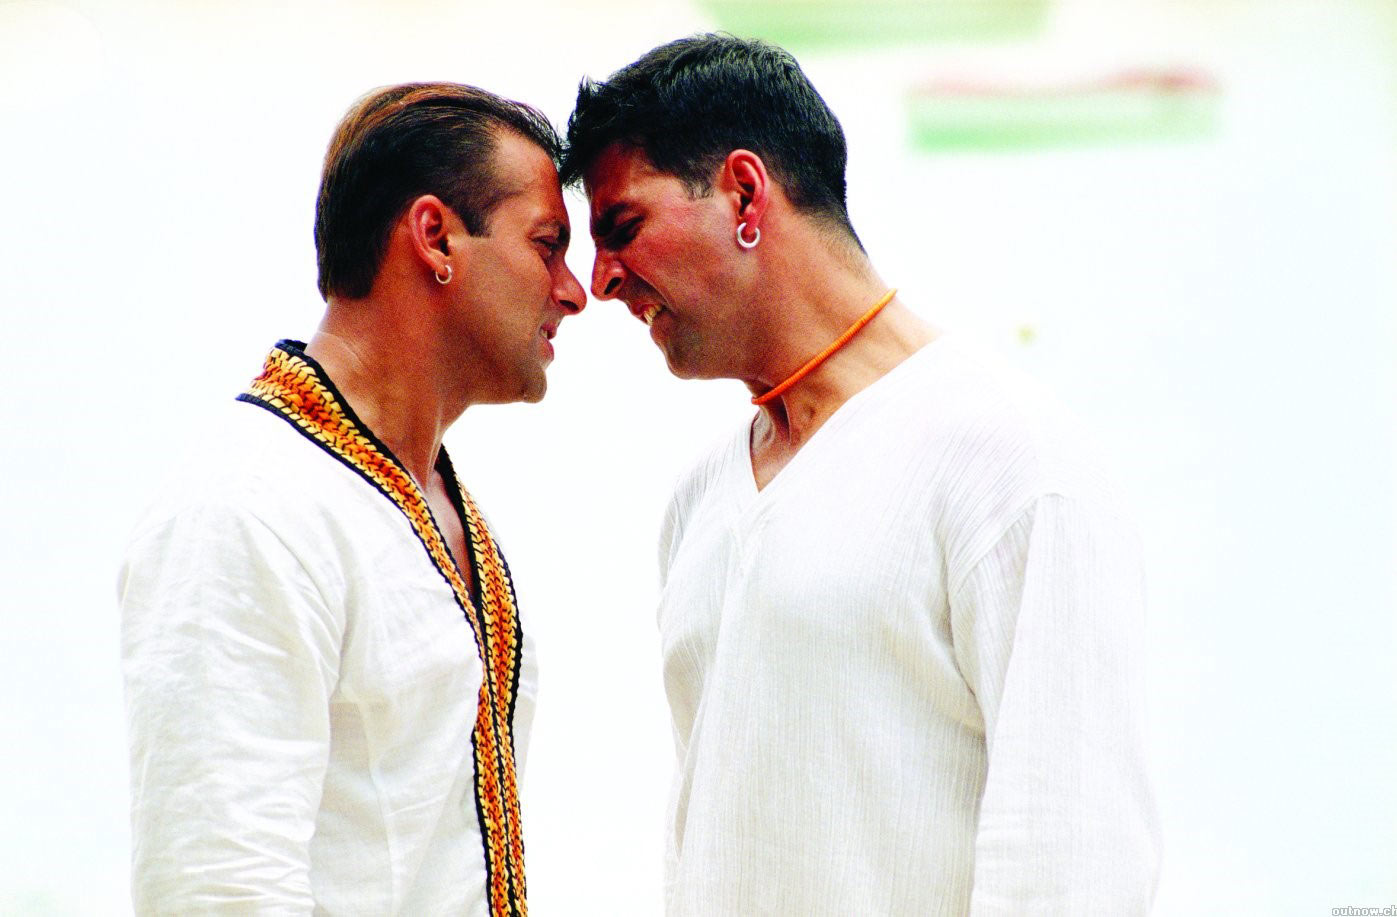 سلمان خان و آکشی کومار در فیلم با من ازدواج میکنی در لباس سفید